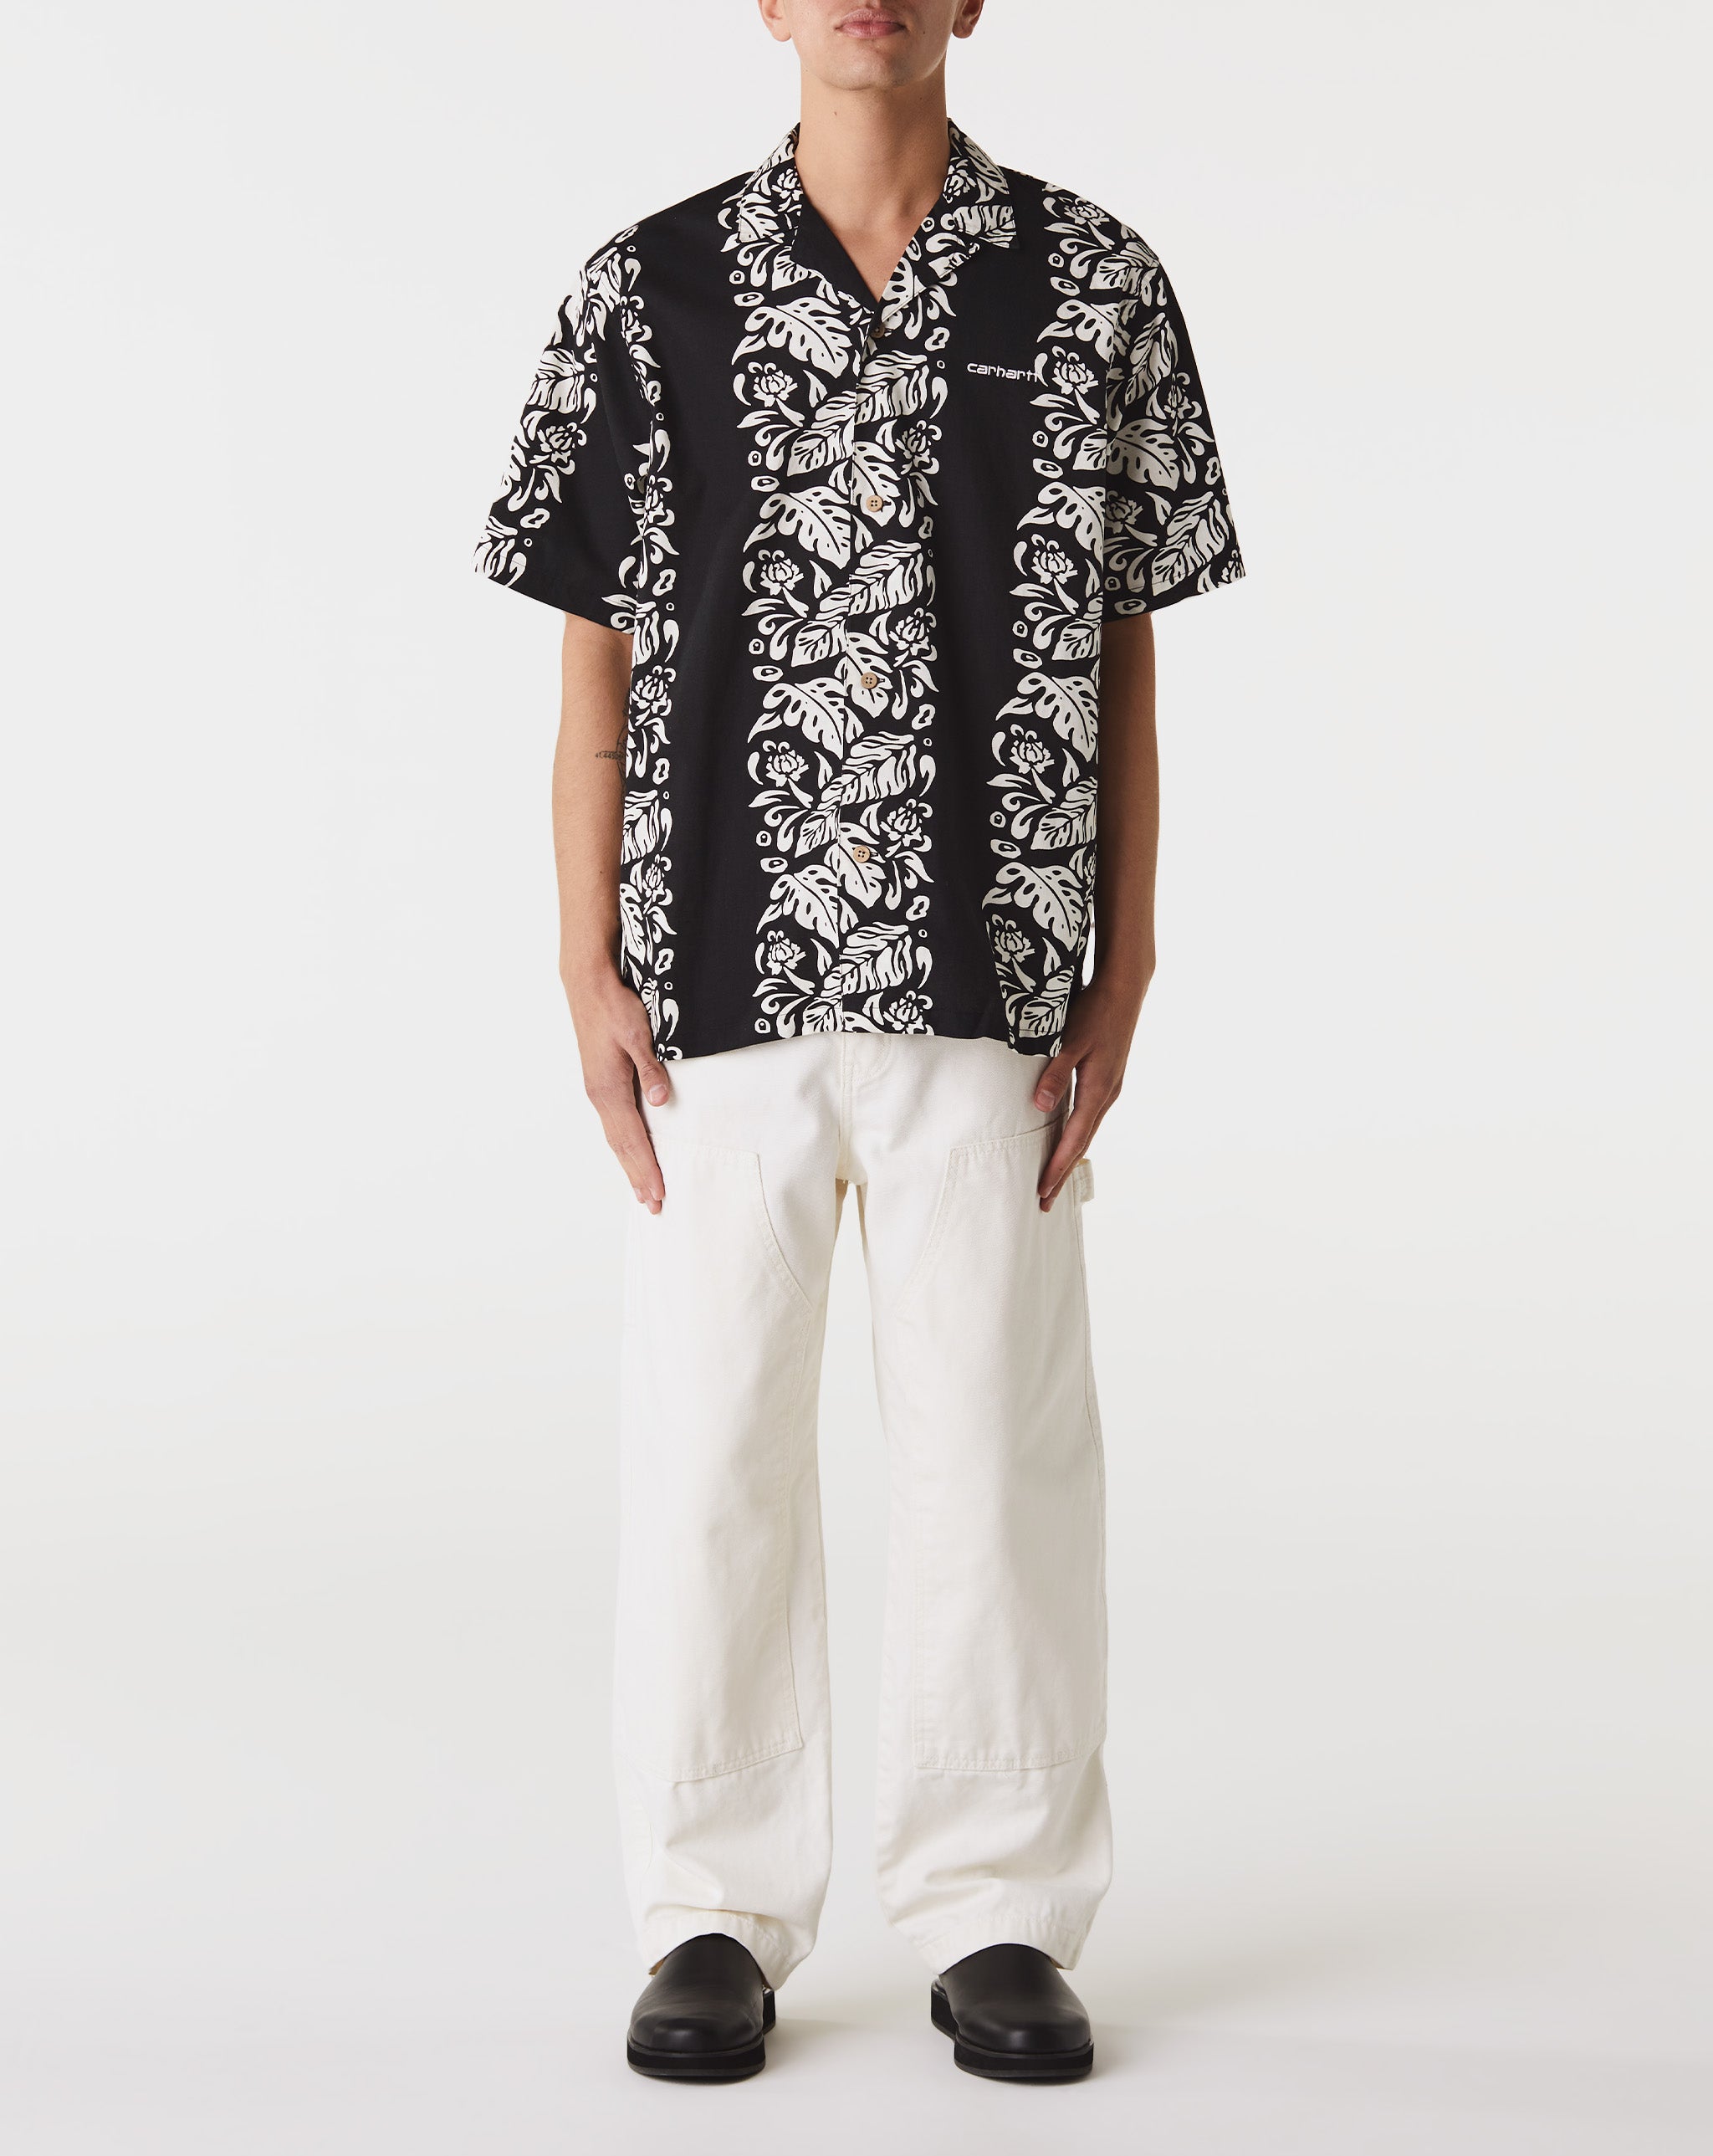 Carhartt WIP Floral Shirt  - Cheap Cerbe Jordan outlet